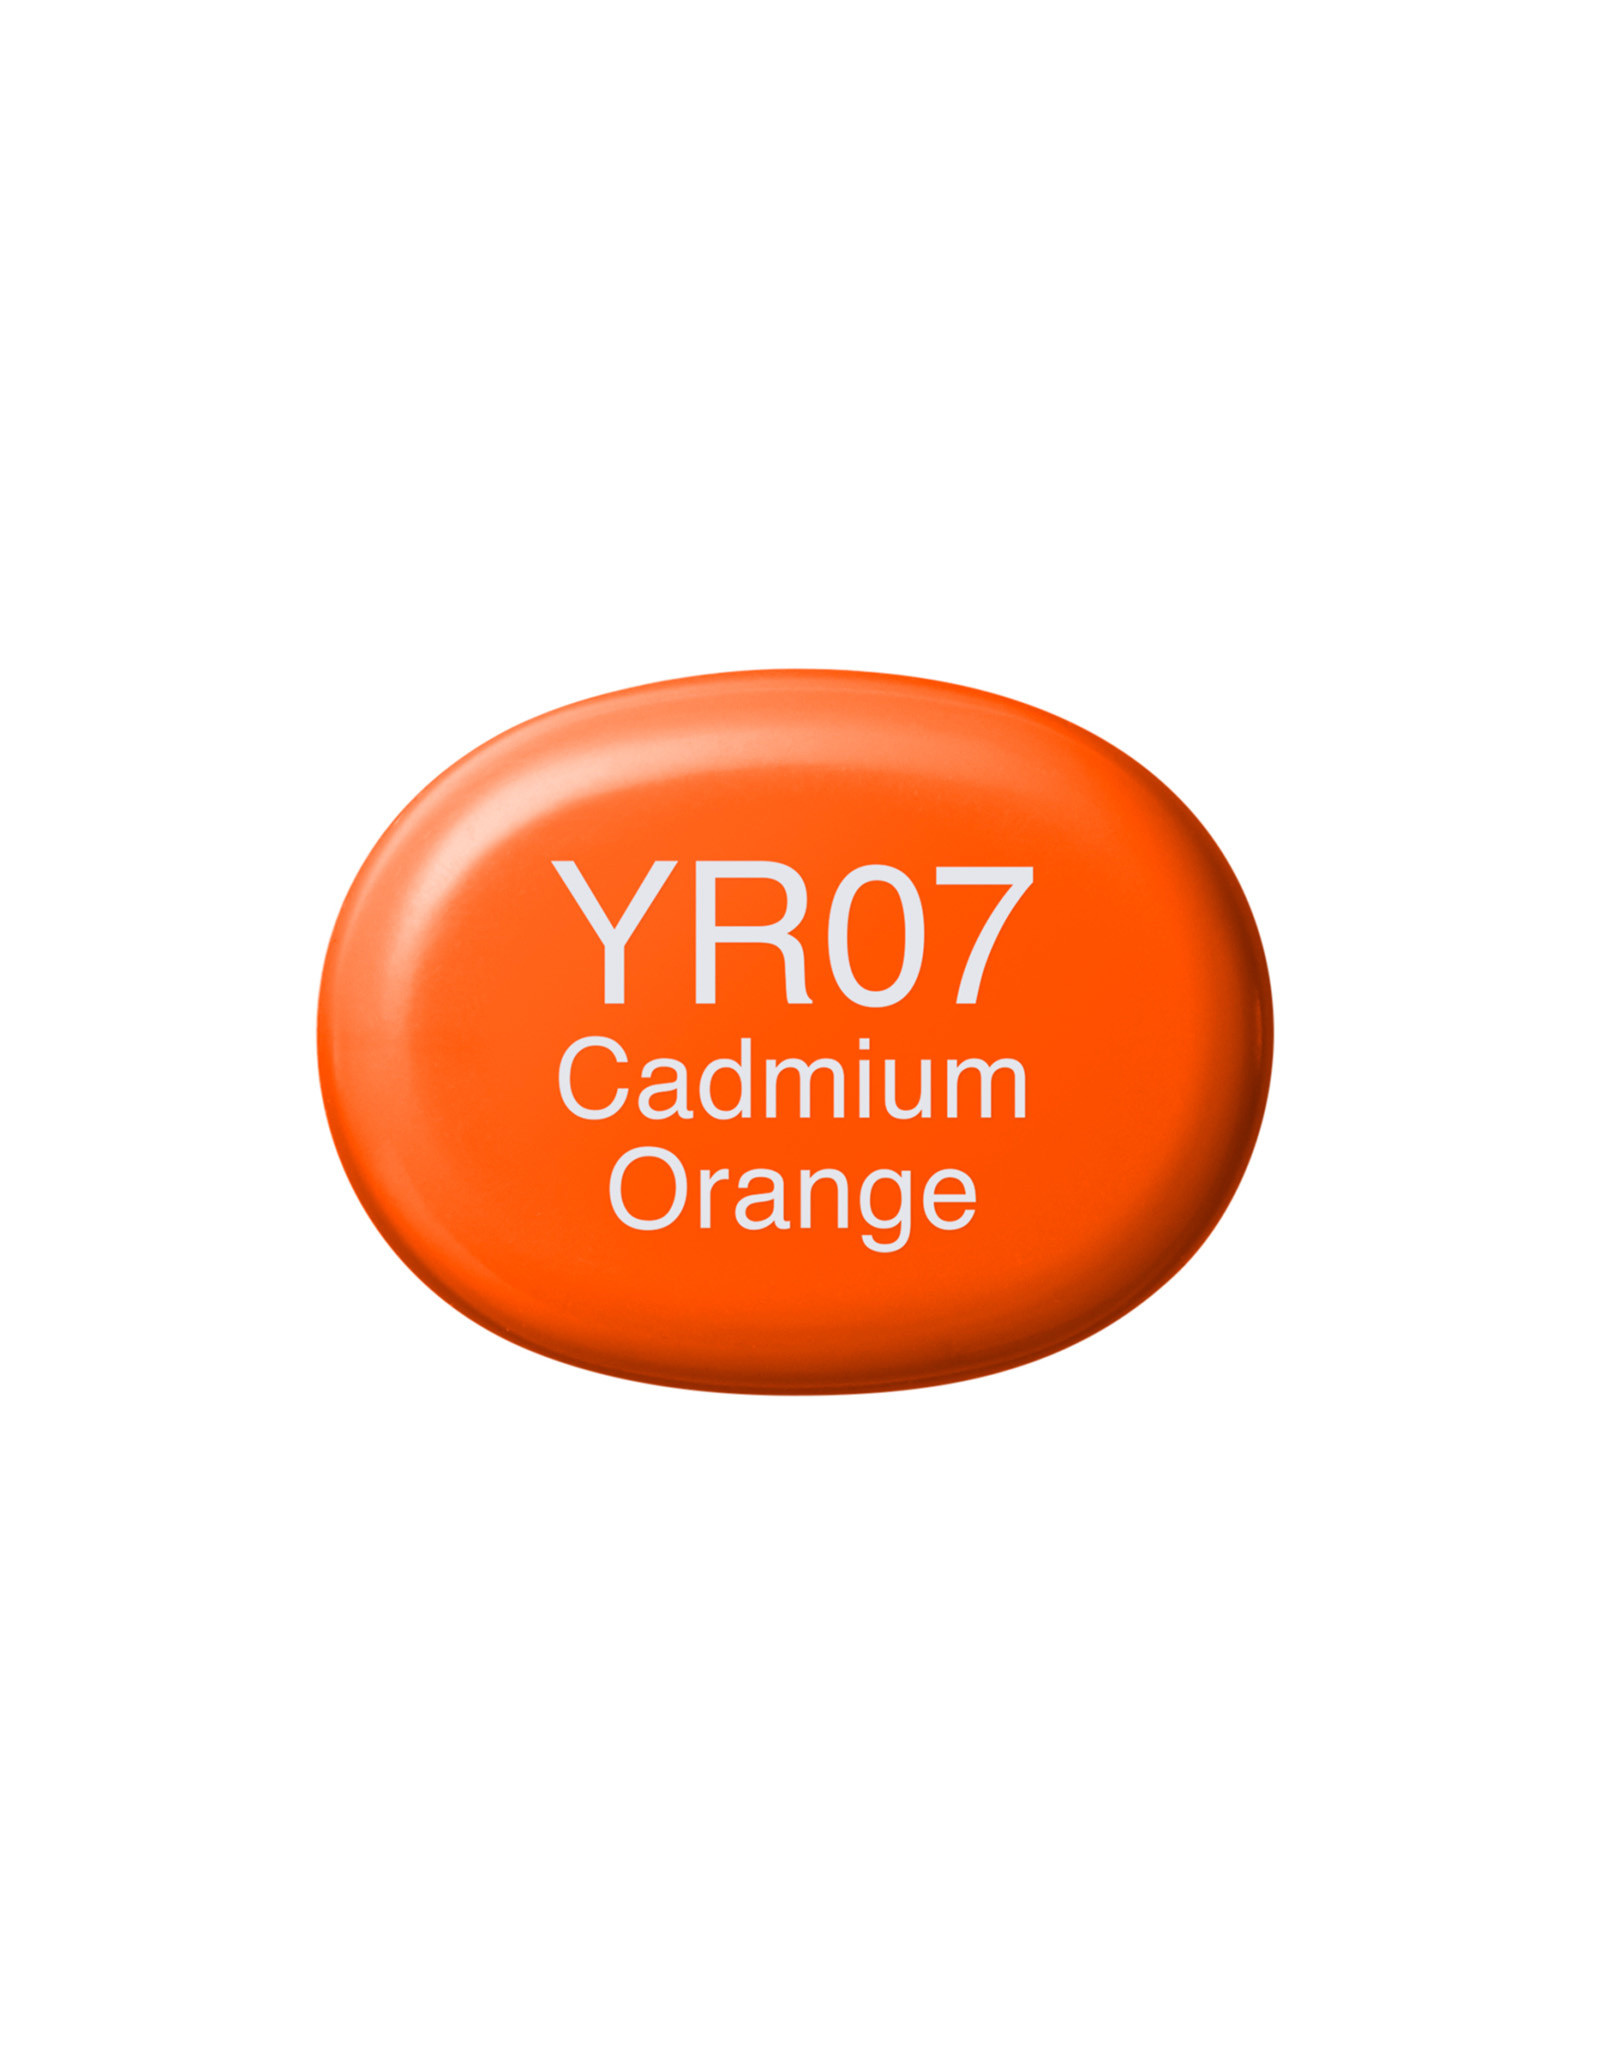 COPIC COPIC Sketch Marker YR07 Cadmium Orange